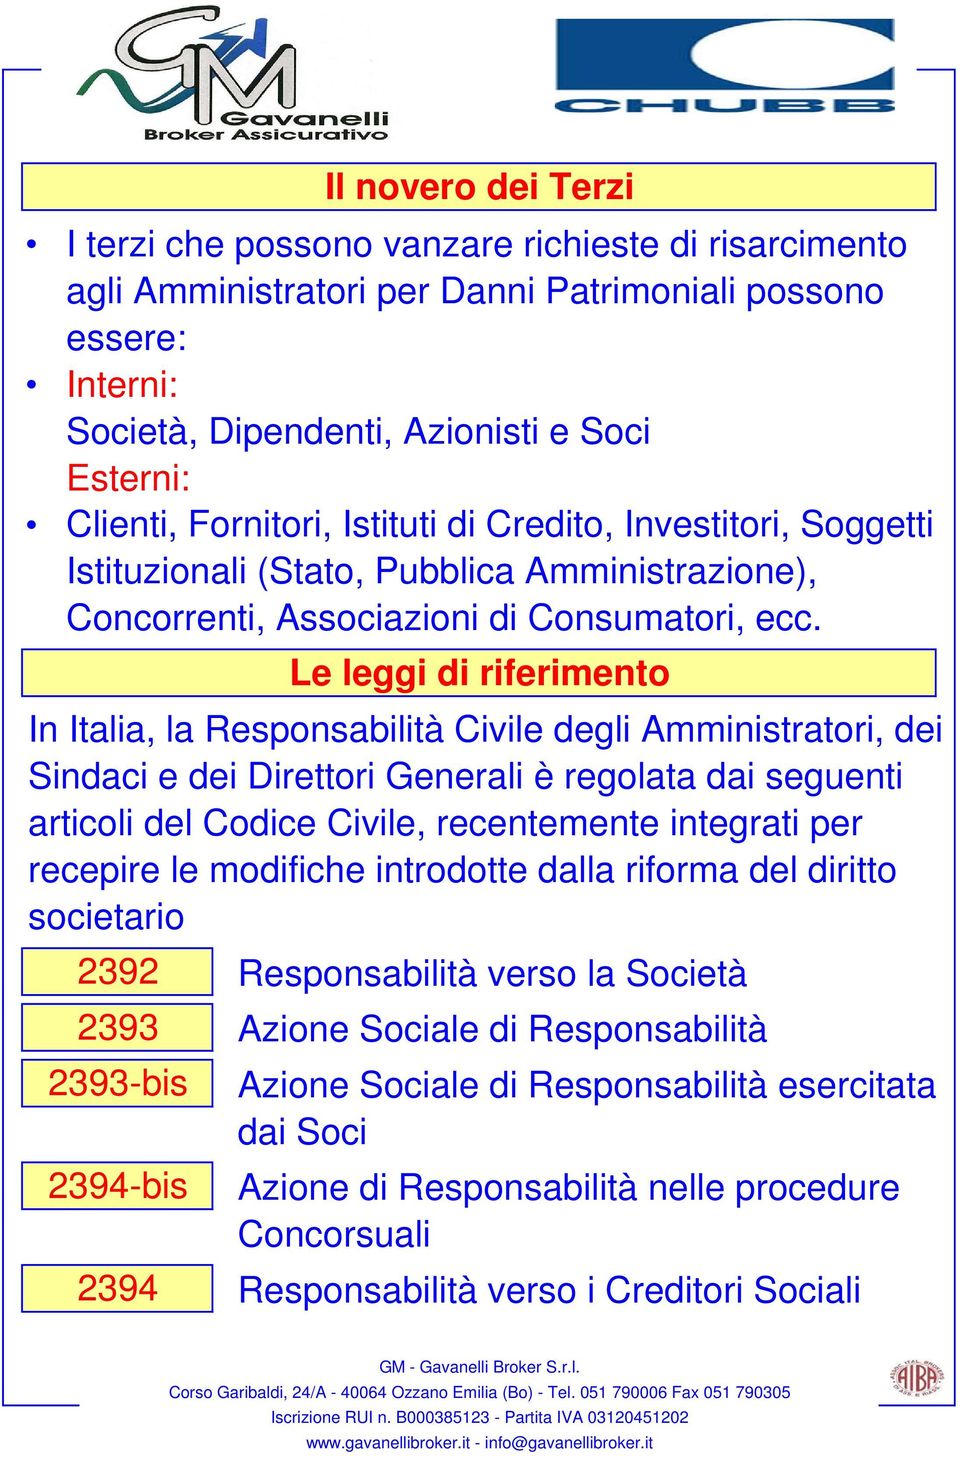 In Italia, la Responsabilità Civile degli Amministratori, dei Sindaci e dei Direttori Generali è regolata dai seguenti articoli del Codice Civile, recentemente integrati per recepire le modifiche